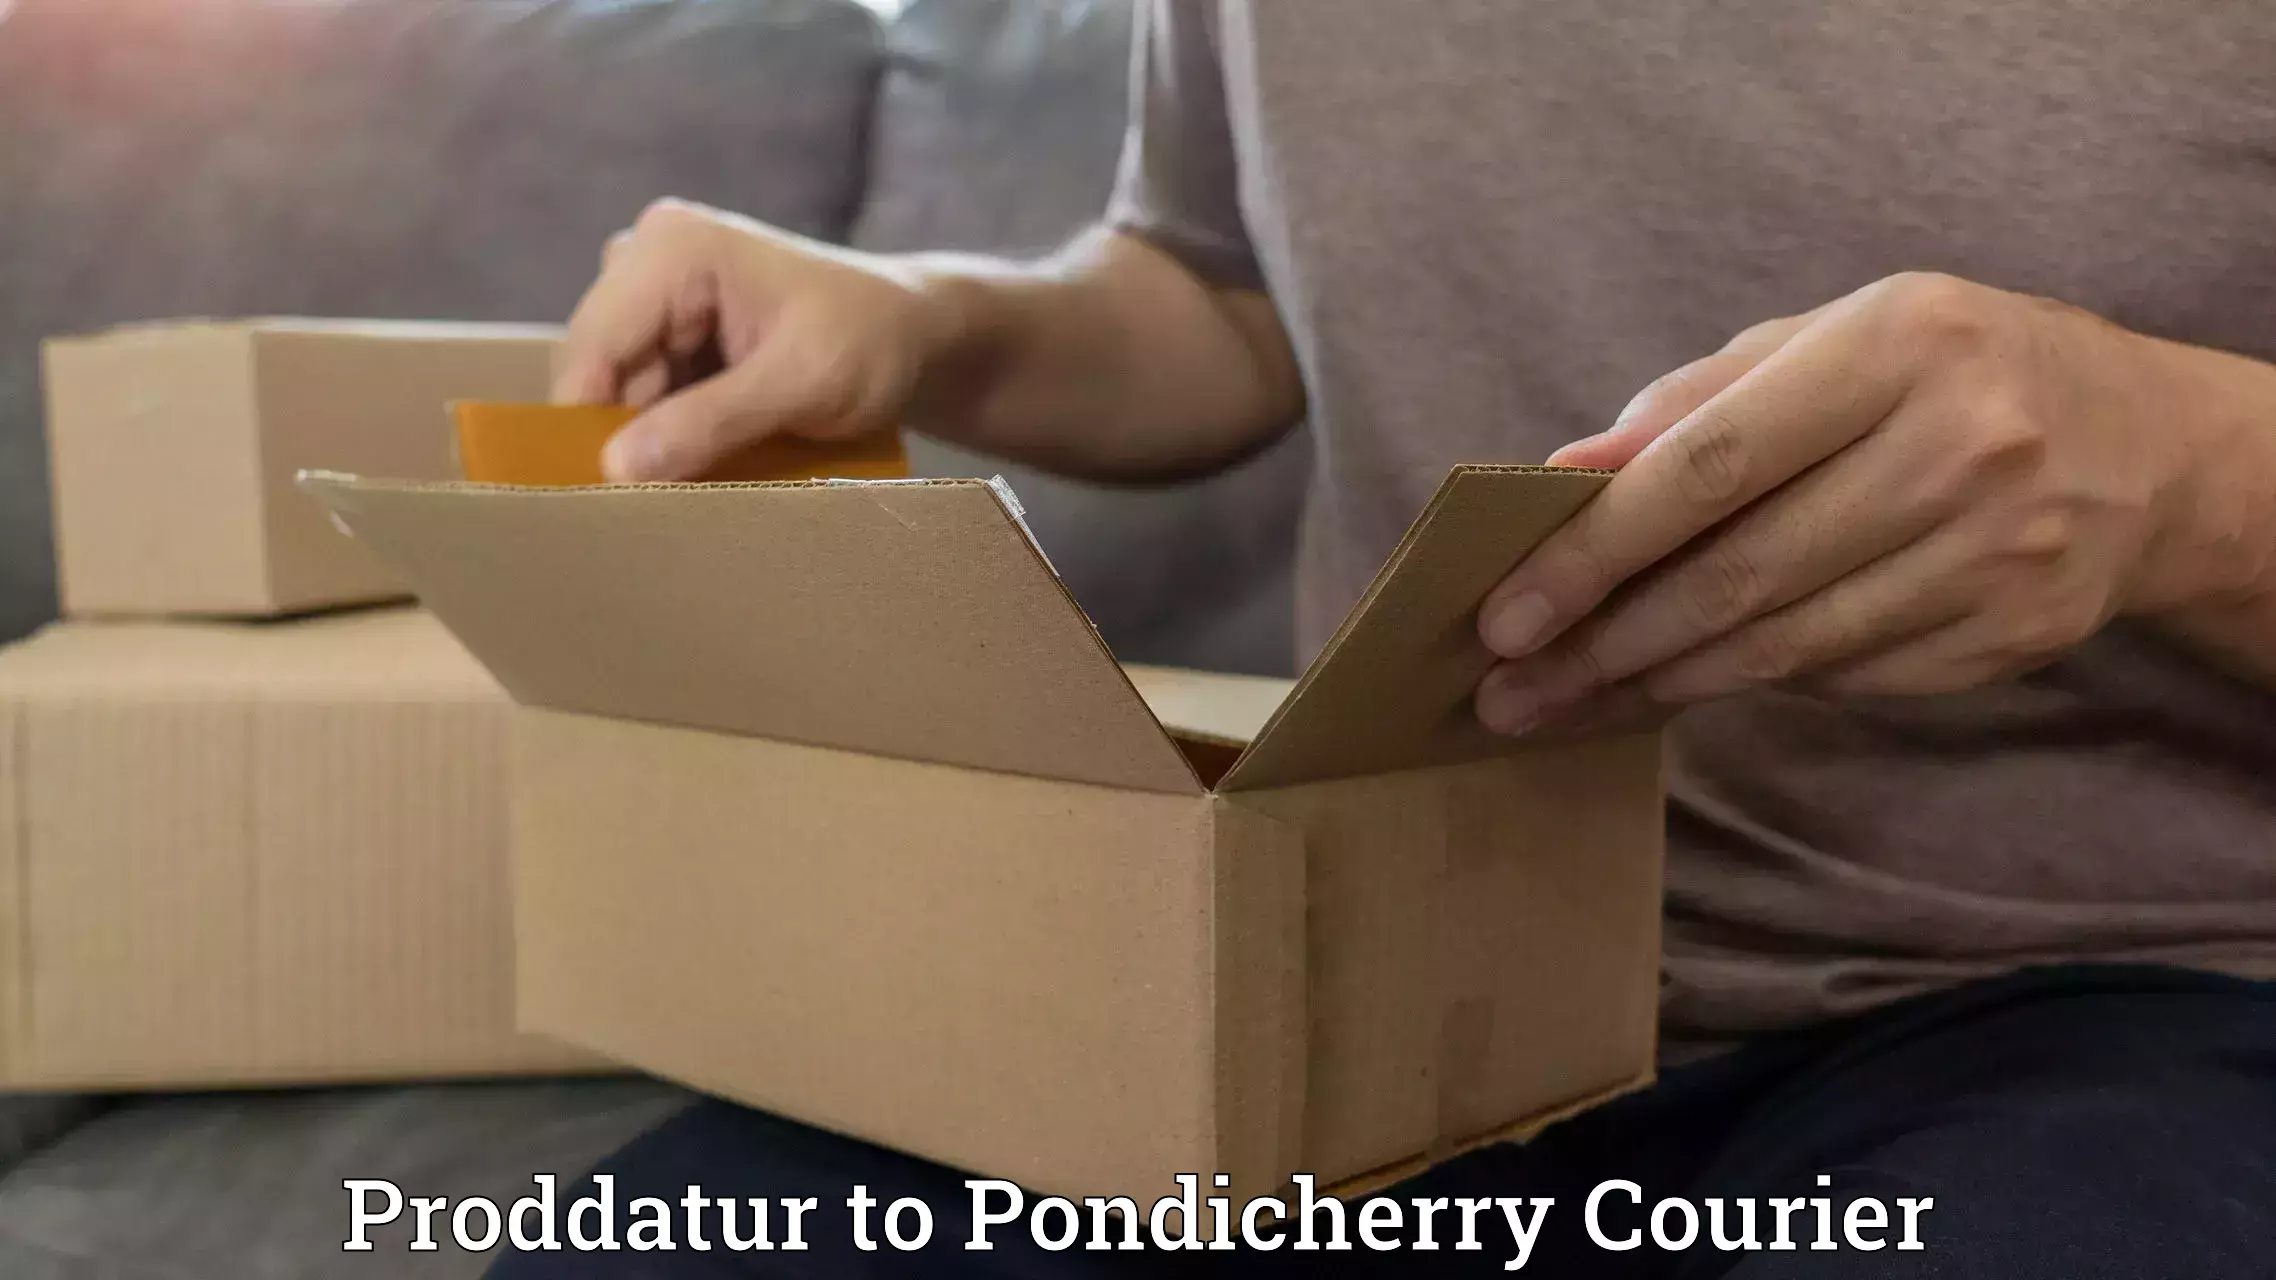 Automated parcel services Proddatur to Pondicherry University